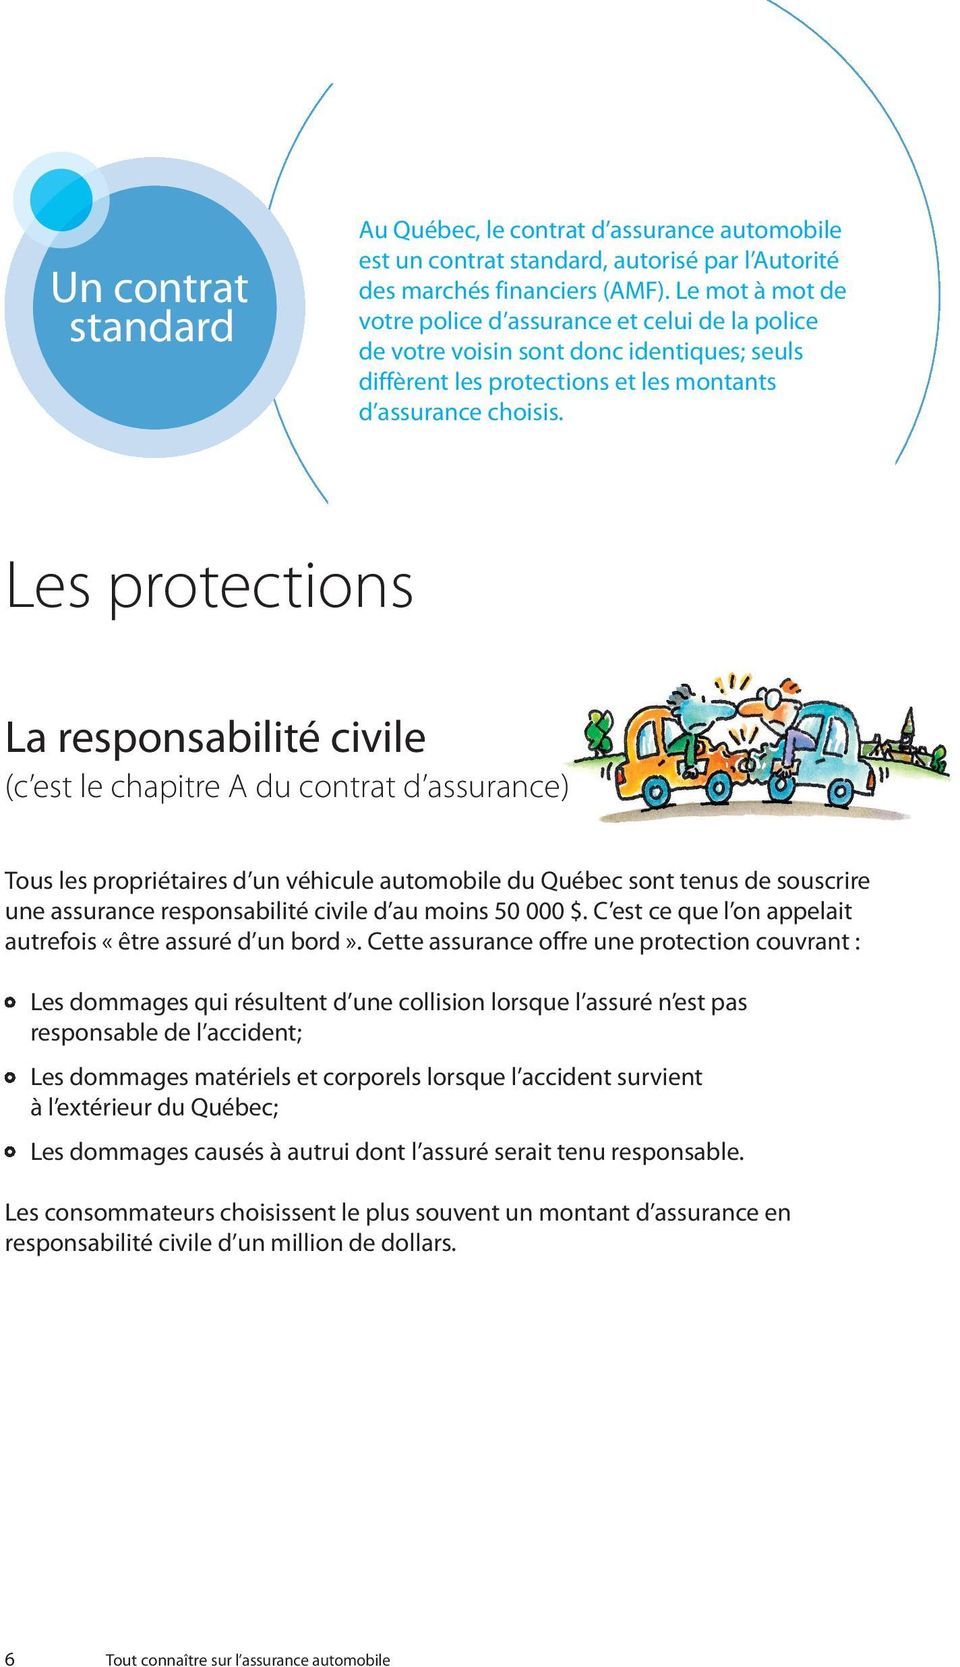 Les protections La responsabilité civile (c est le chapitre A du contrat d assurance) Tous les propriétaires d un véhicule automobile du Québec sont tenus de souscrire une assurance responsabilité